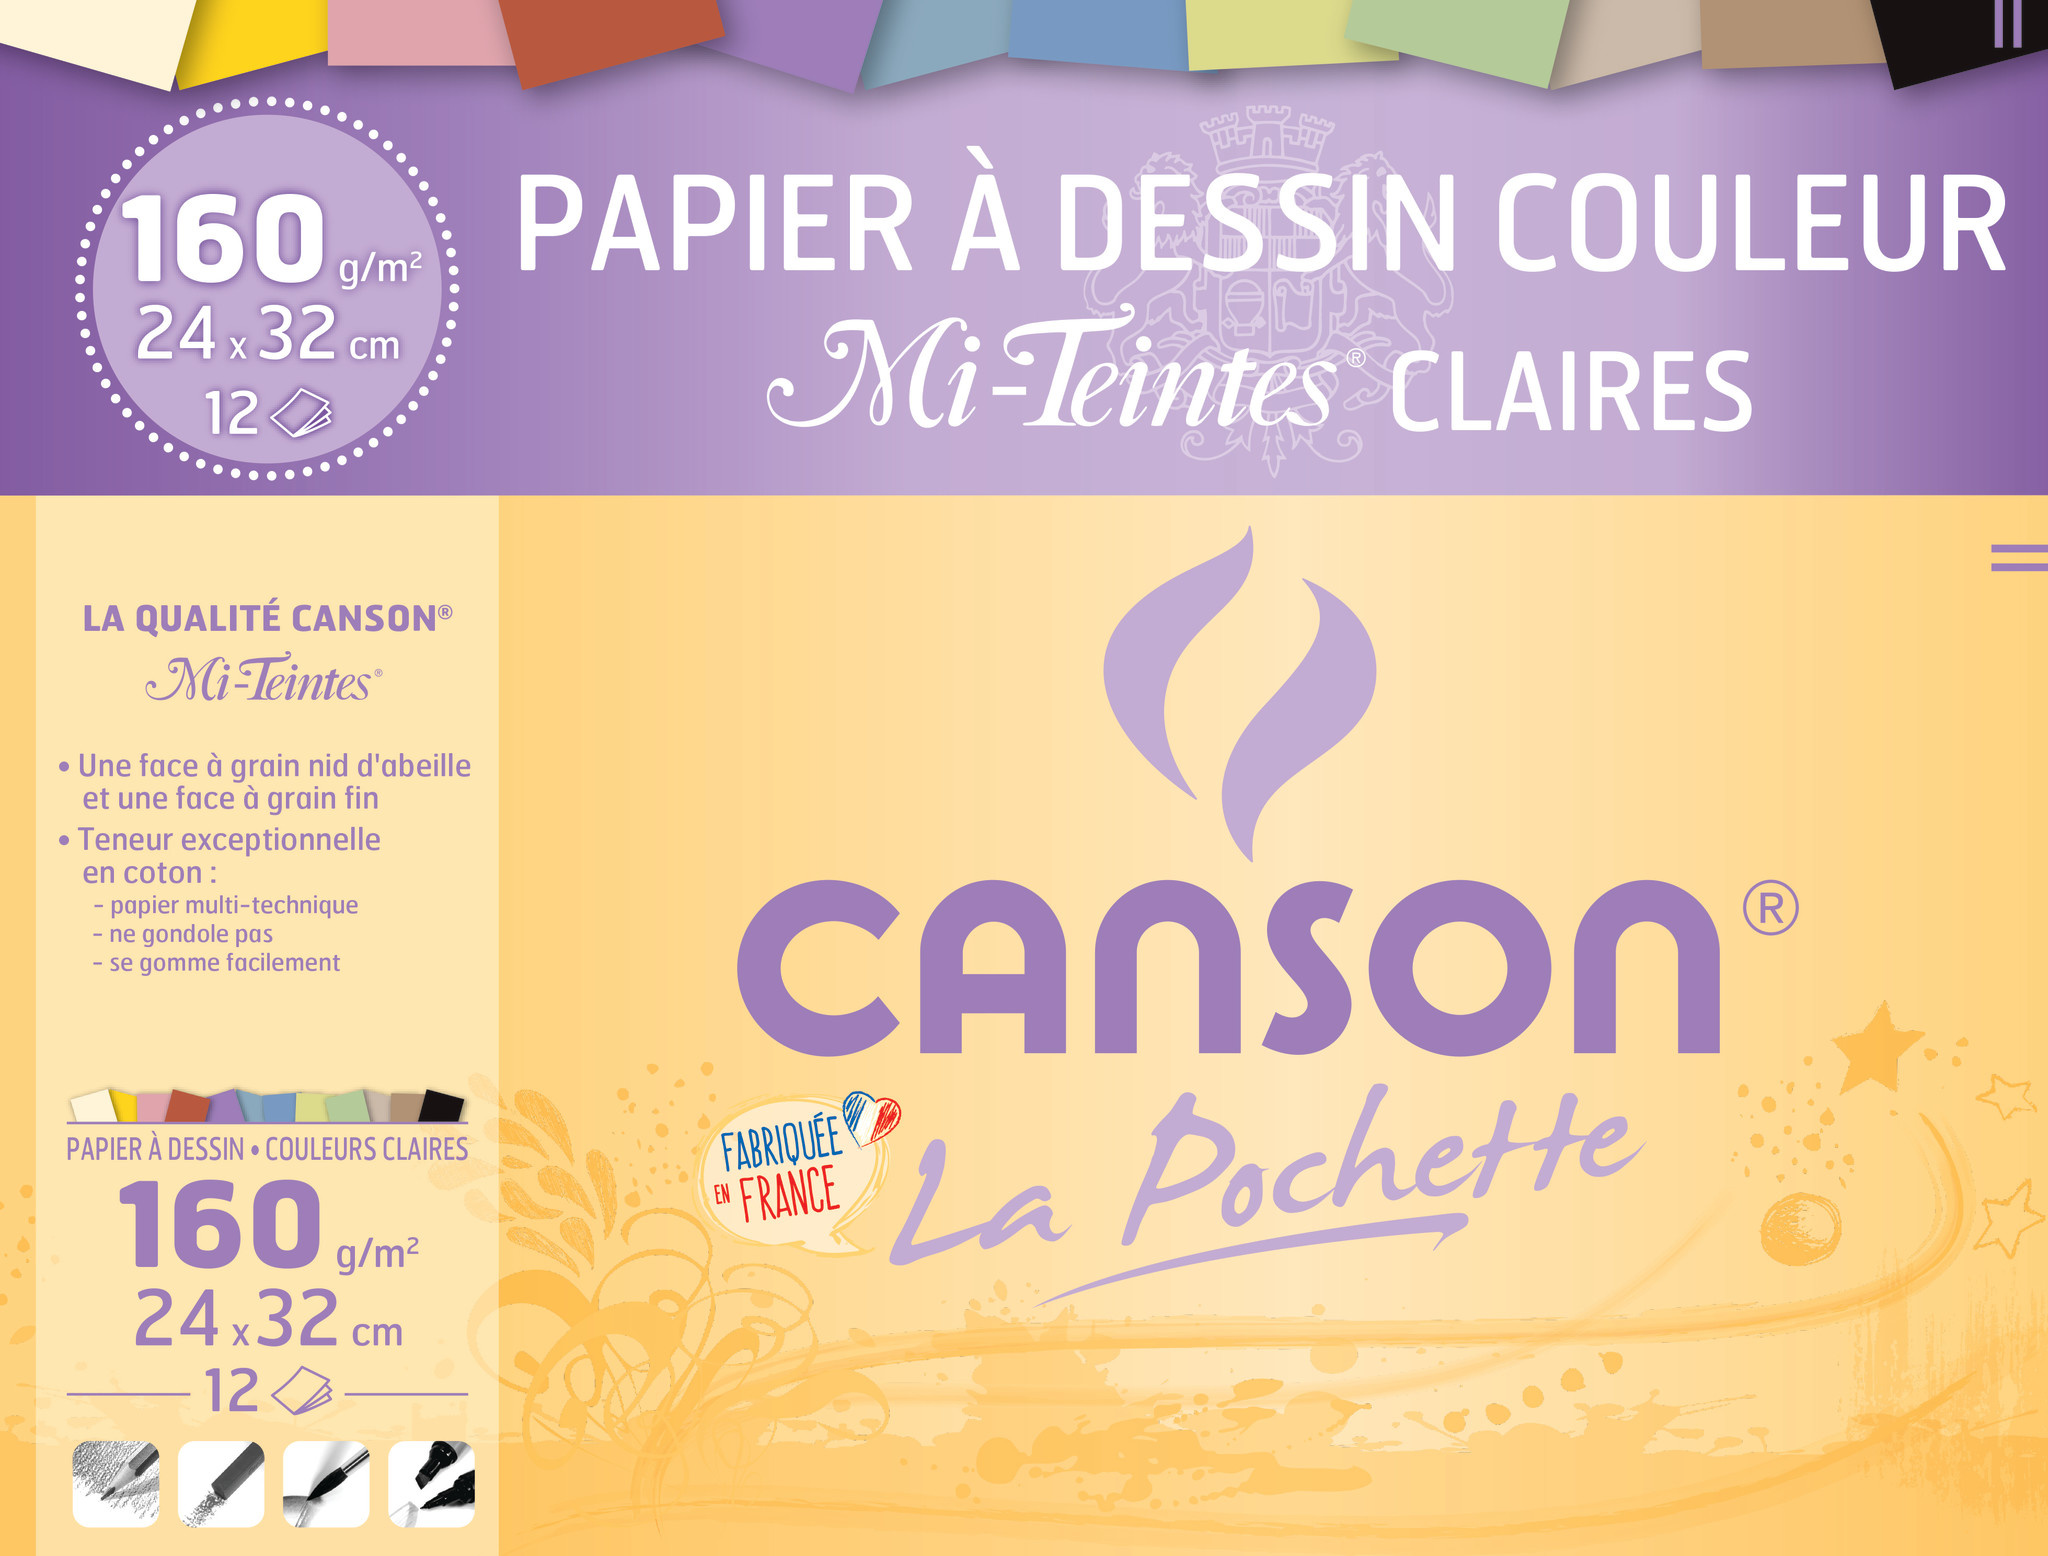 CANSON pochette 12 feuilles couleurs vives Canson 160g 24x32cm pas